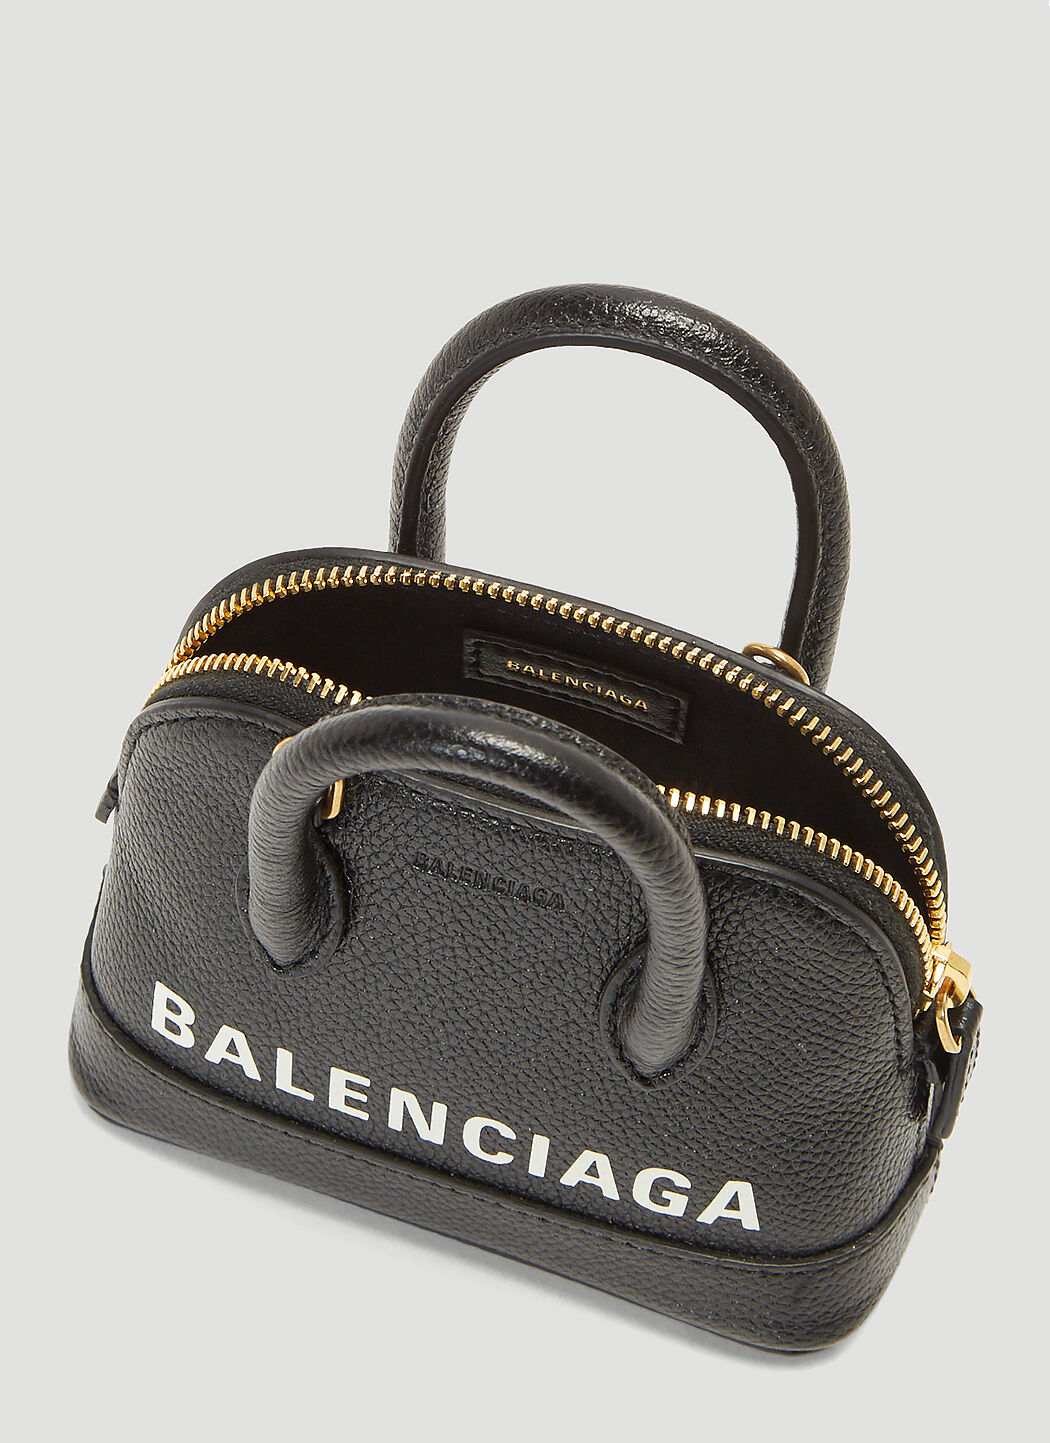 Balenciaga Ville Bag  7 For Sale on 1stDibs